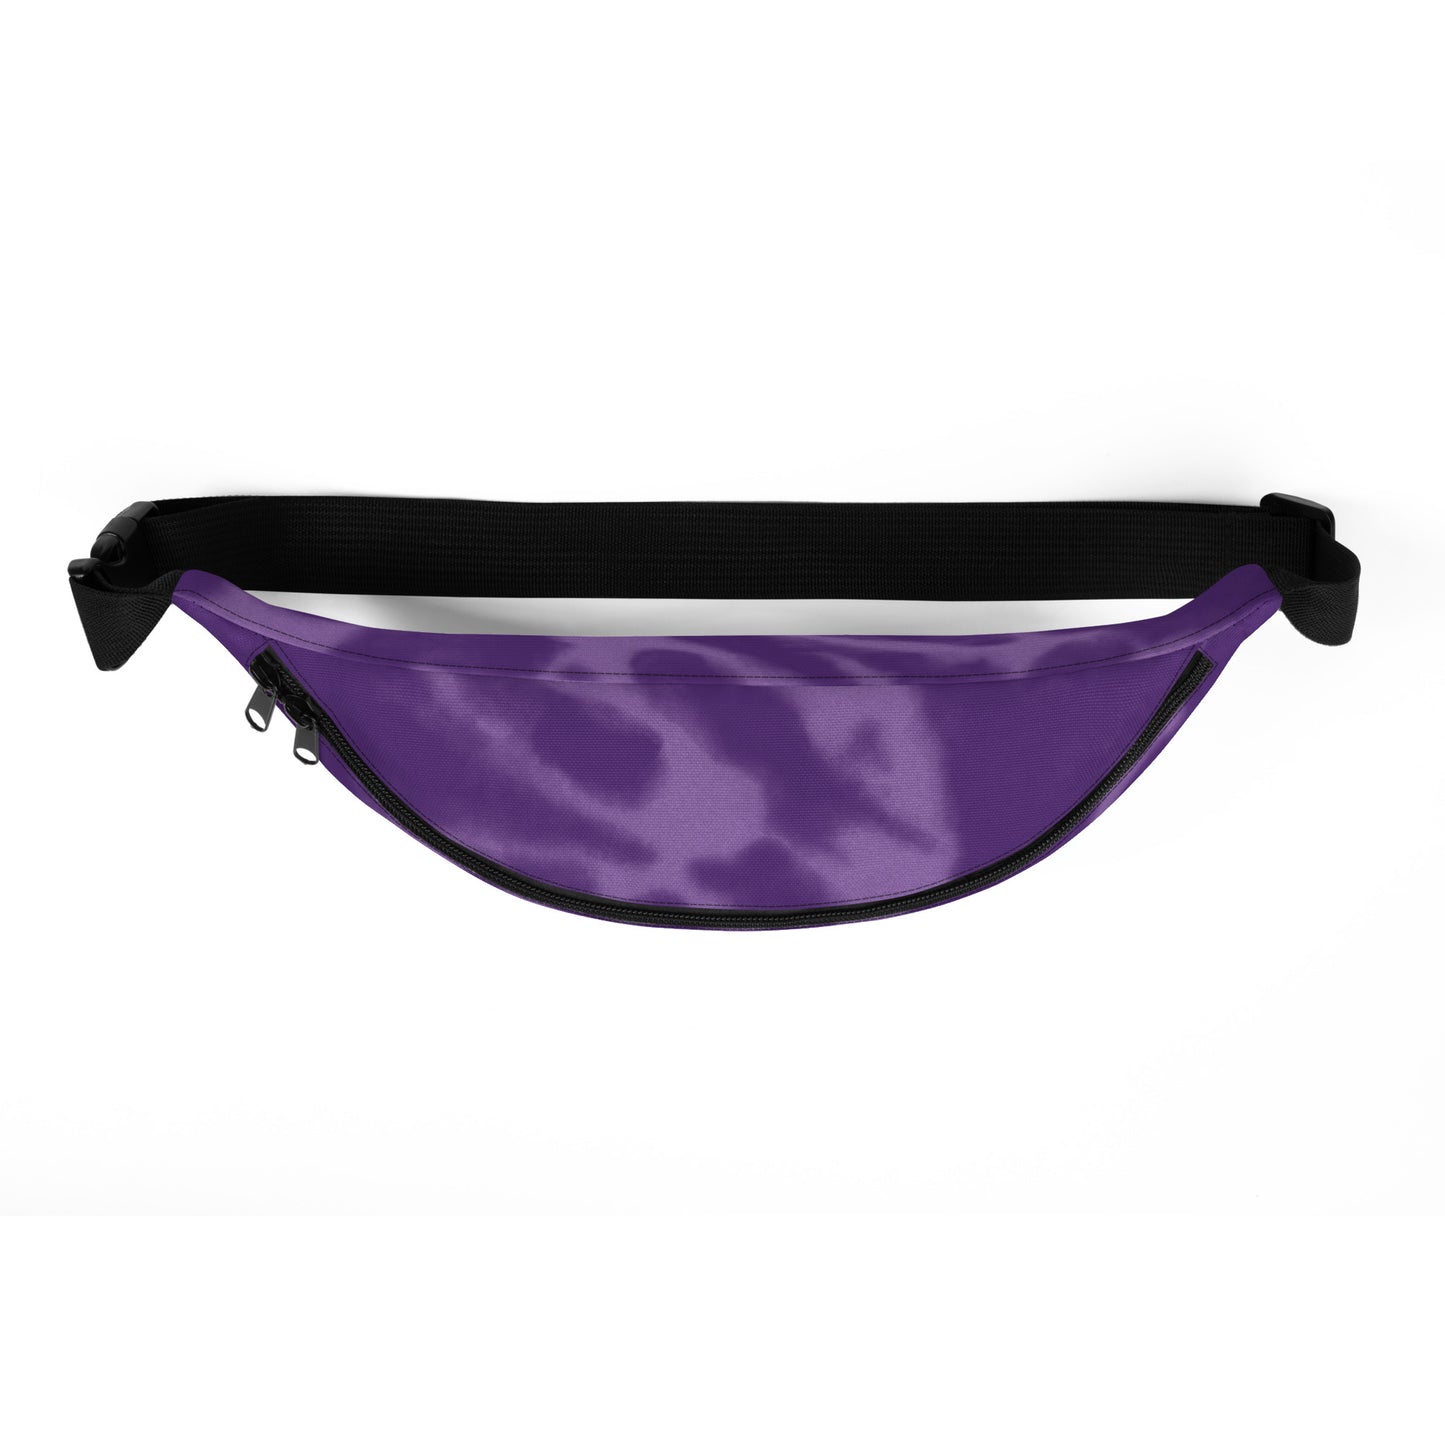 Travel Gift Fanny Pack - Purple Tie-Dye • OAK Oakland • YHM Designs - Image 08